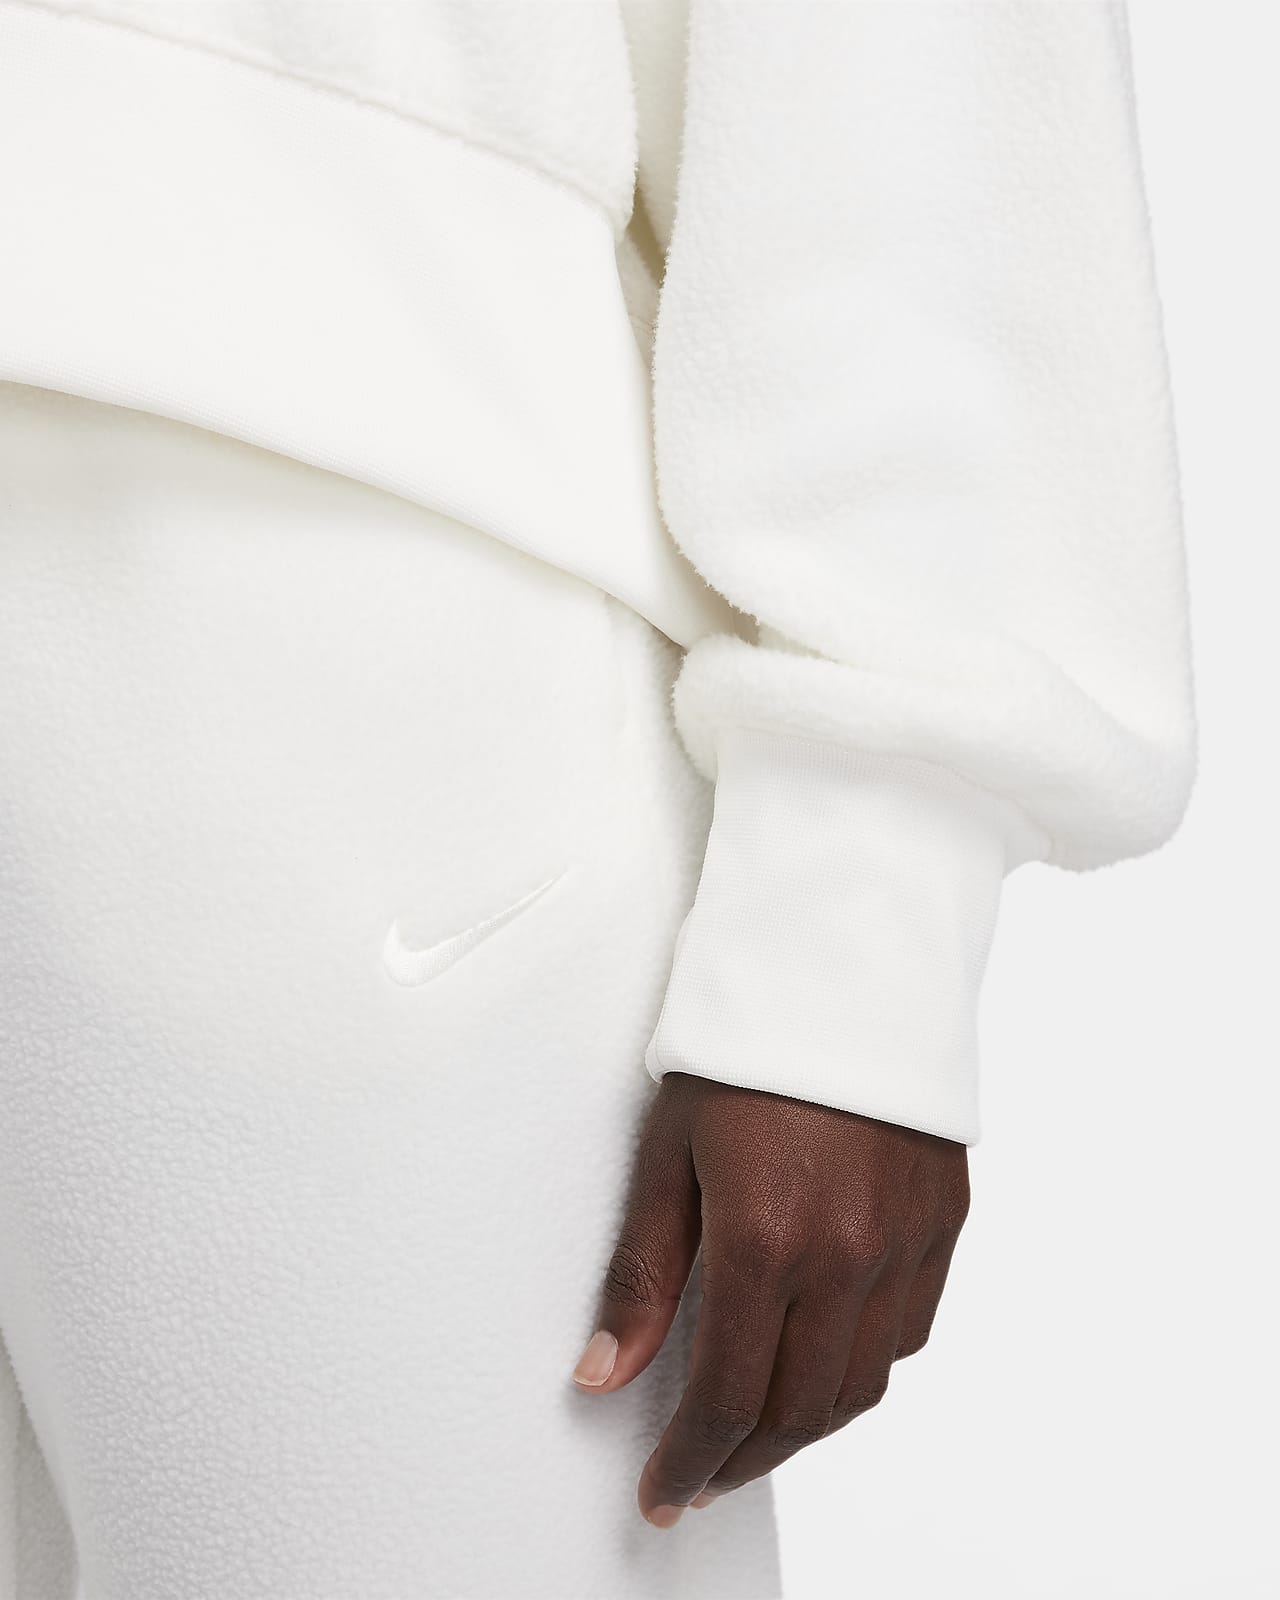 Women's Sportswear Plush Mod Crop Crew Sweatshirt, Nike